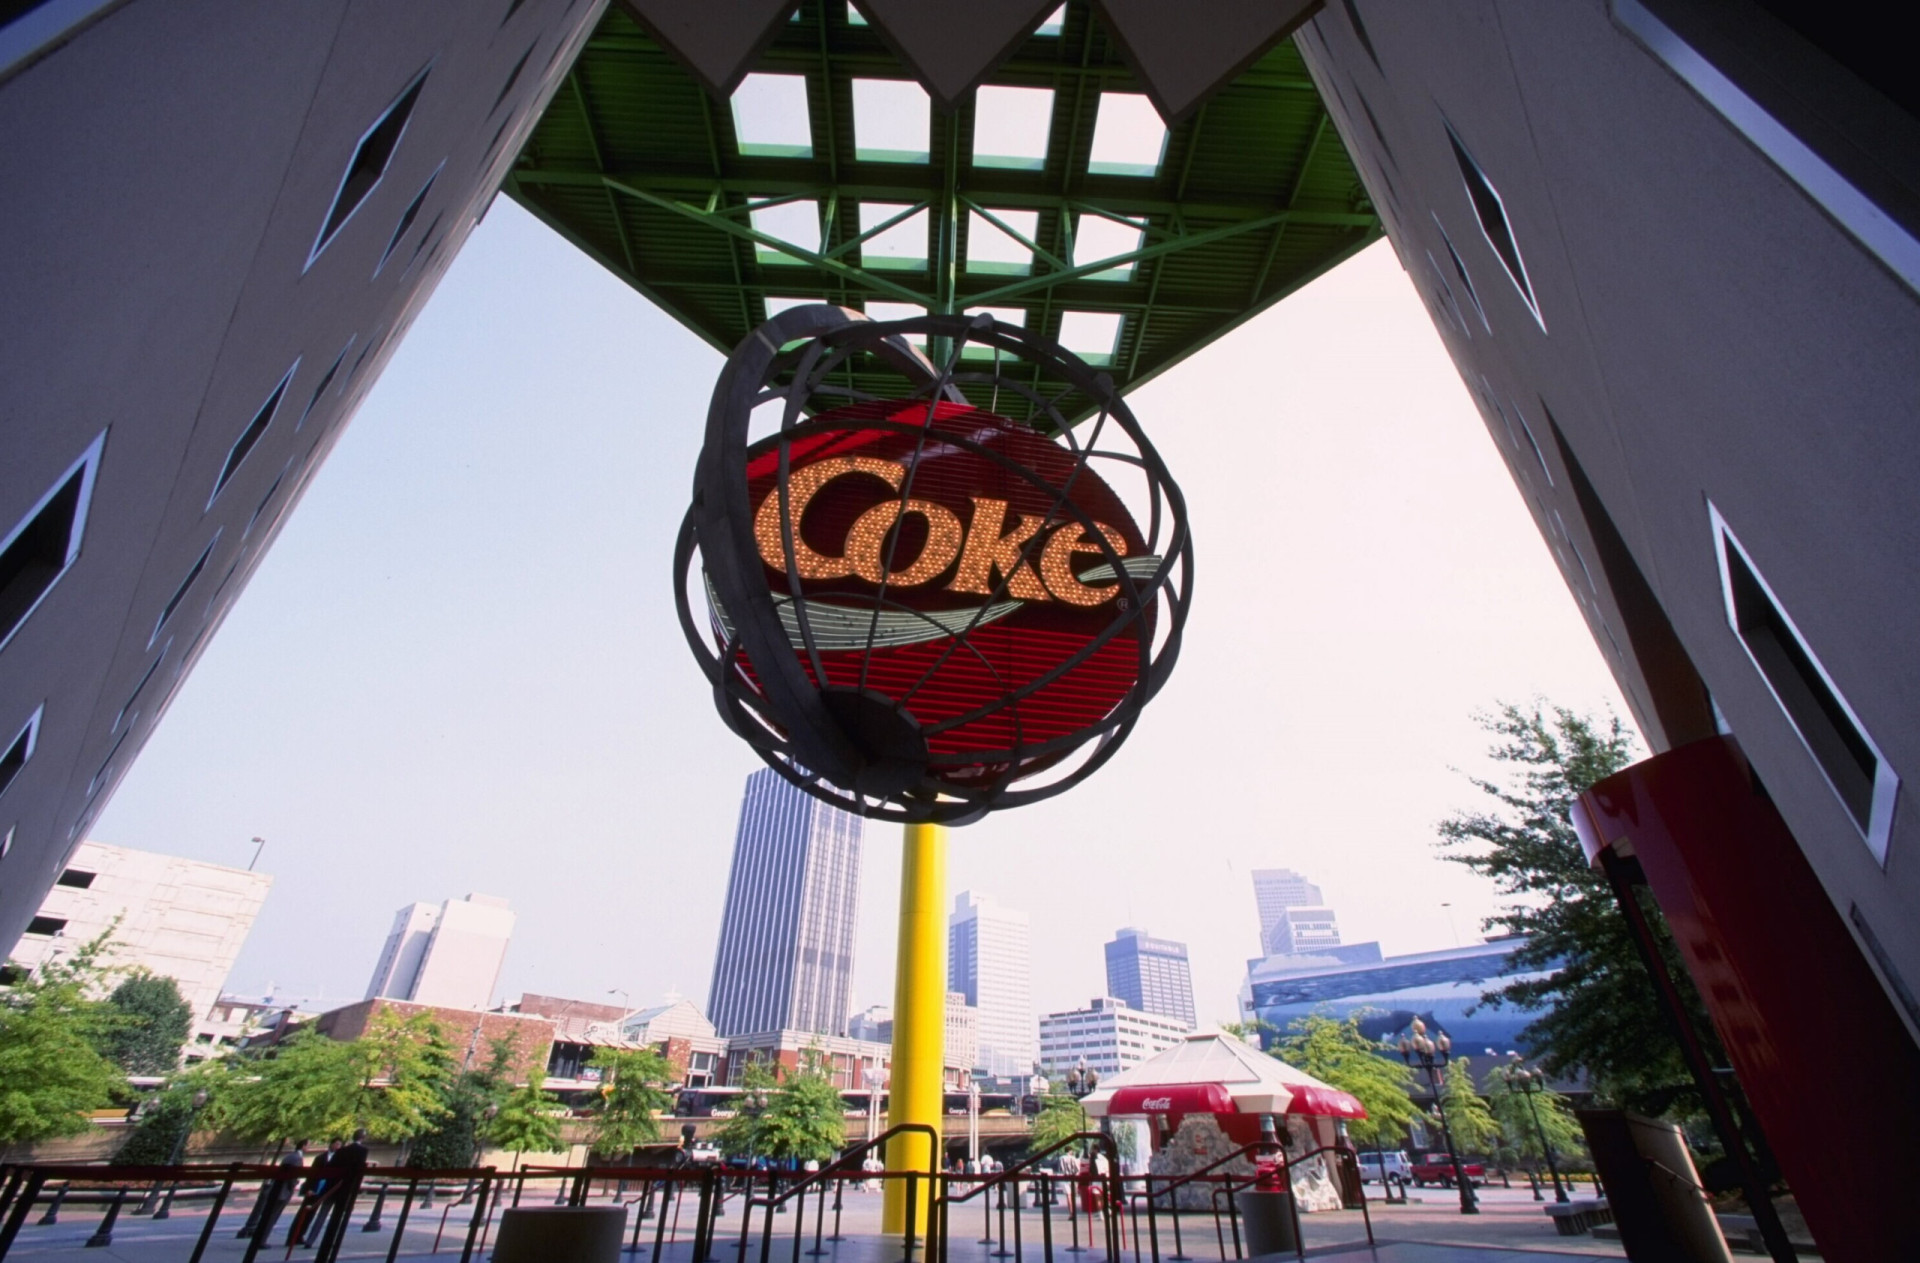 <p>El museo World of Coca-Cola (Atlanta, Georgia) alberga una cámara acorazada valorada en miles de millones de dólares donde se dice que se guarda la fórmula secreta de la famosa bebida. La cámara puede verse desde fuera, pero la entrada está estrictamente prohibida.</p>